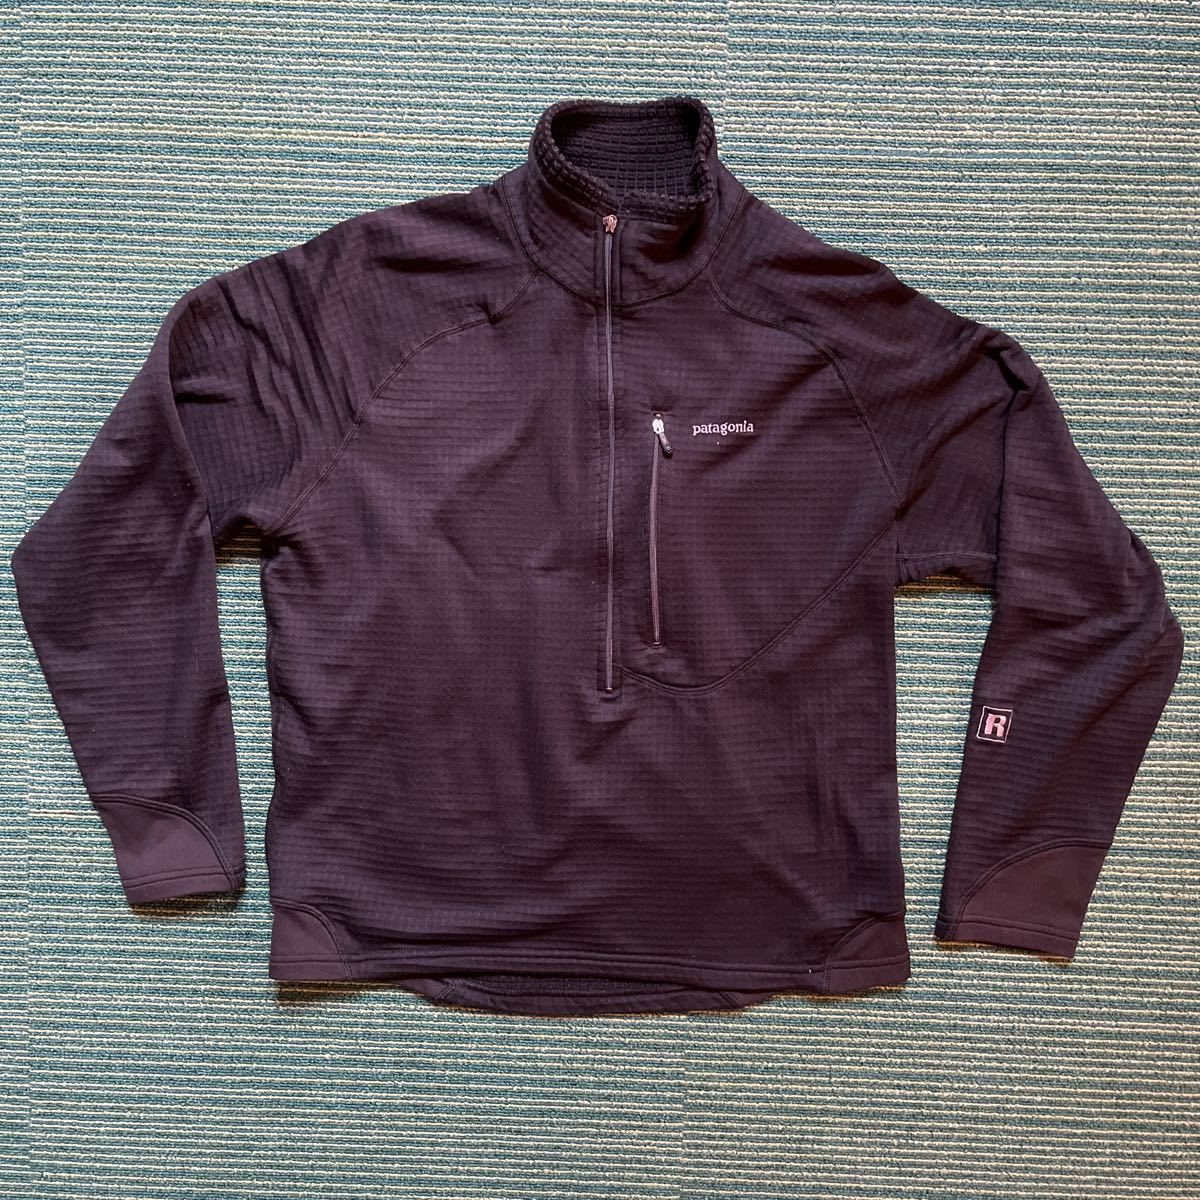 ビンテージ パタゴニア patagonia USA製 POLARTEC シャツ ジャケット アメリカ買付品 アウトドアウエア